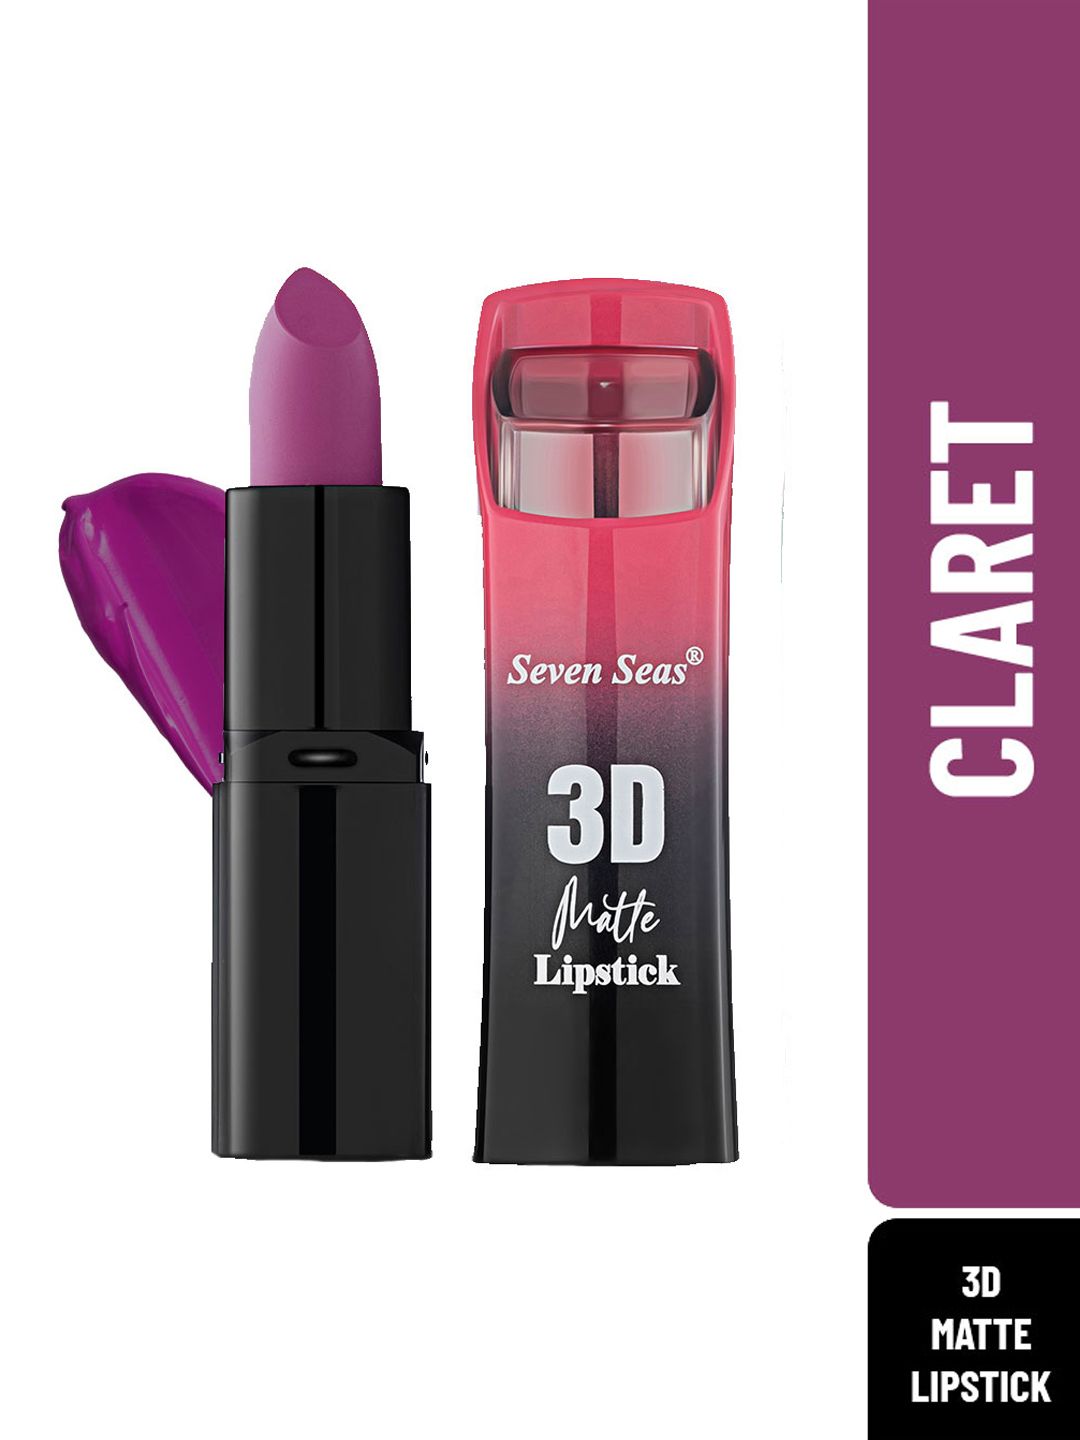 Seven Seas Purple Claret 3D Matte Full Coverage Lipstick Price in India